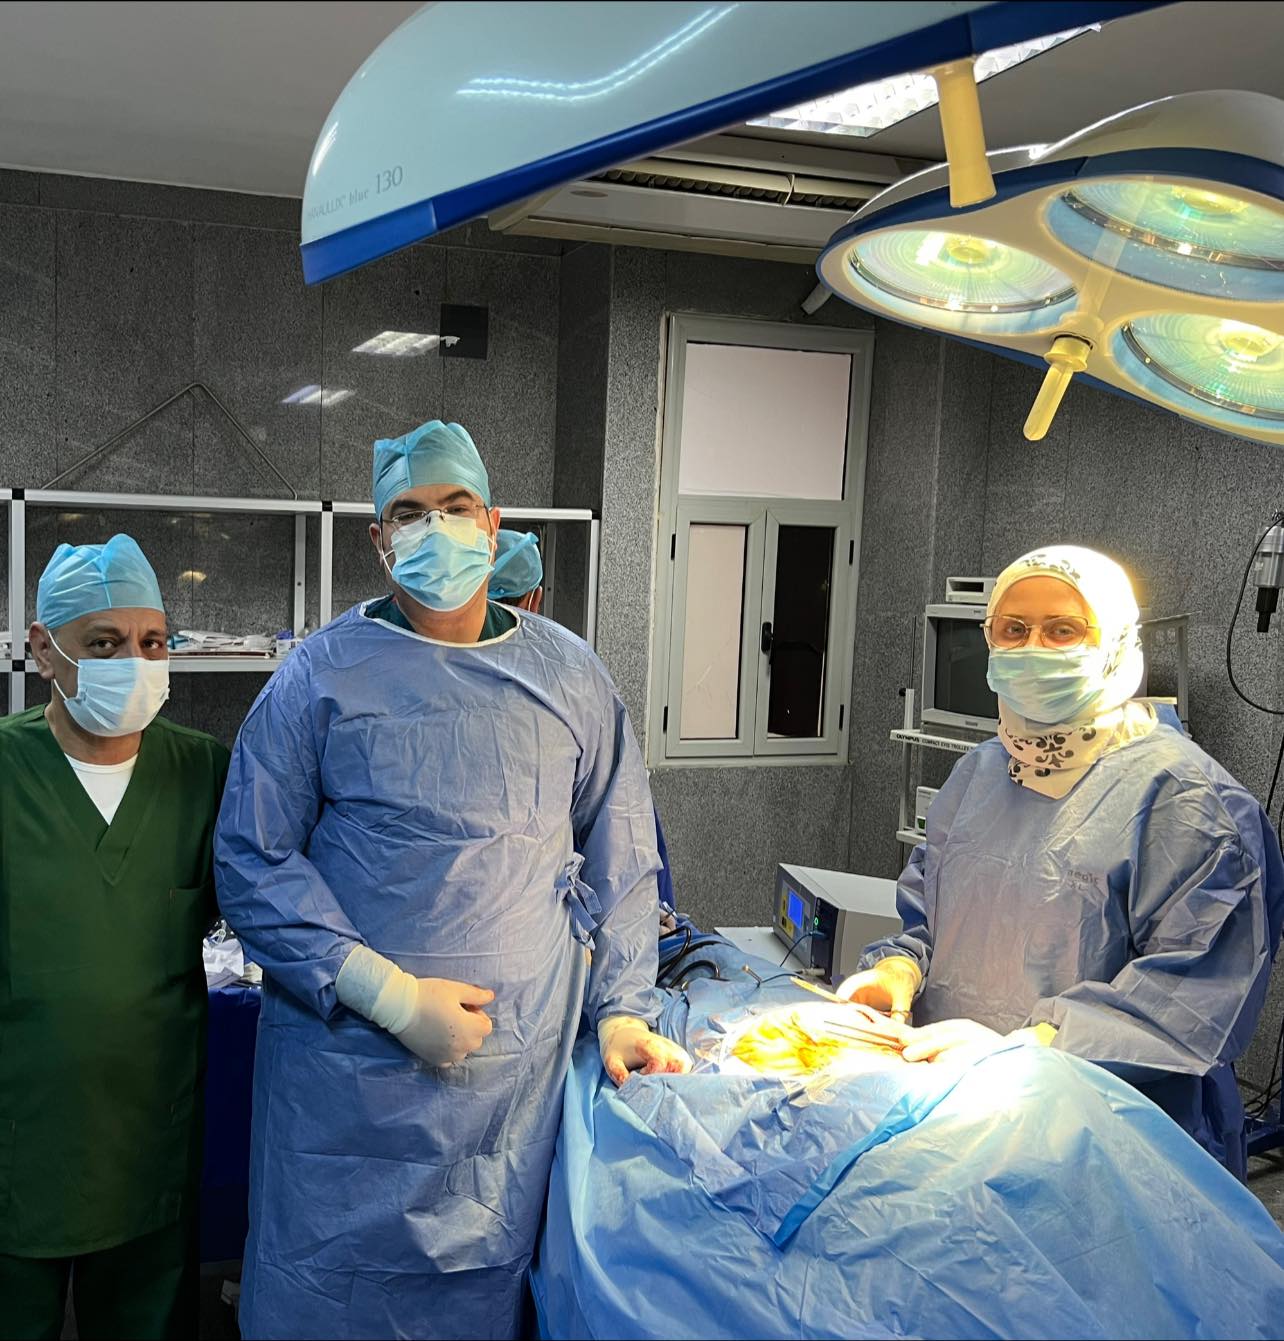 صورة للفريق الجراحي بعد اجراء العملية بنجاح